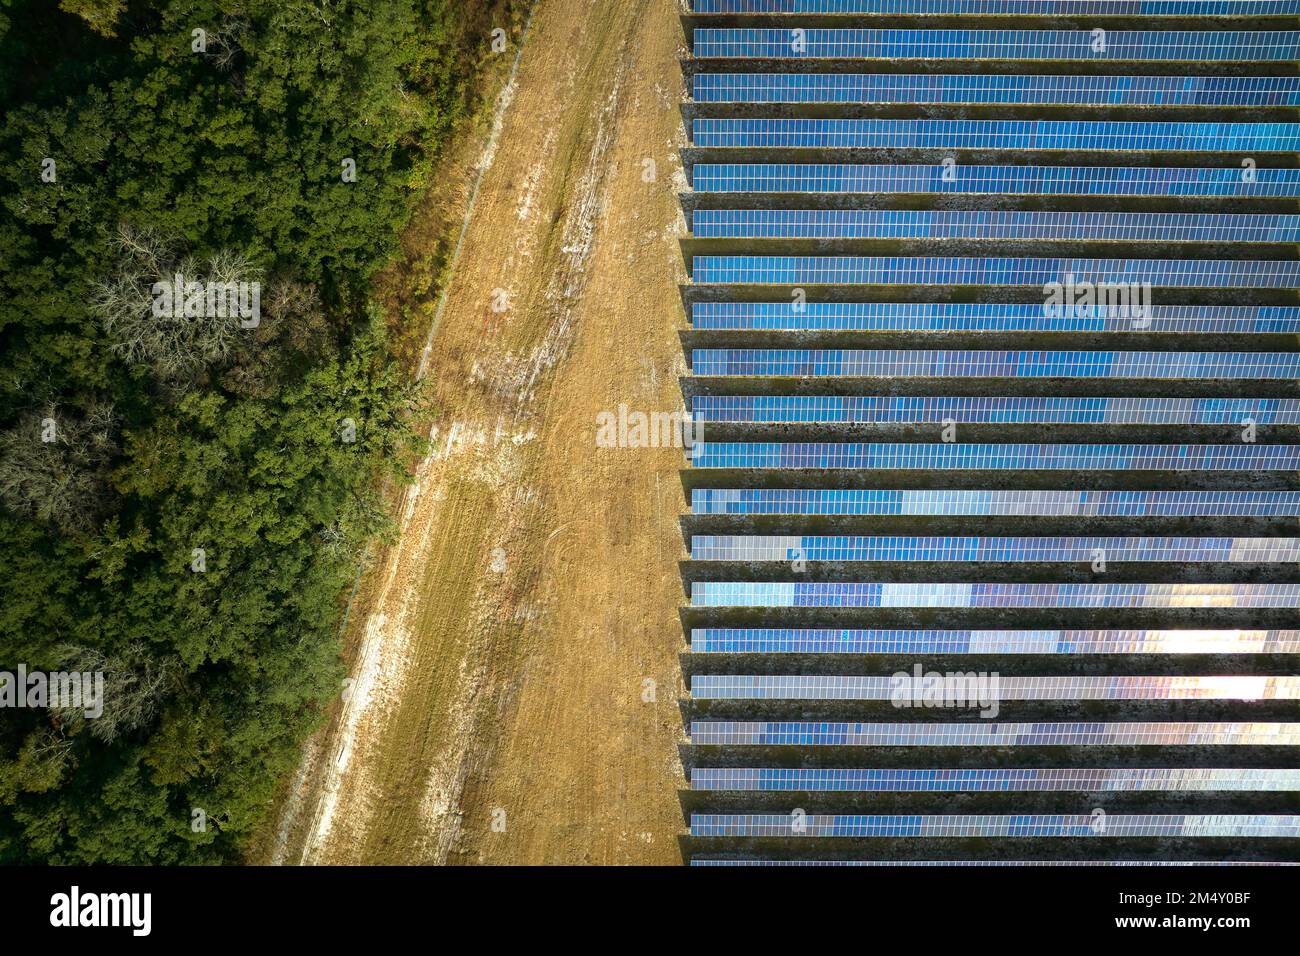 Luftaufnahme eines großen nachhaltigen Elektrokraftwerks mit vielen Reihen von Photovoltaik-Solarzellen zur Erzeugung sauberer elektrischer Energie. Erneuerbar elect Stockfoto